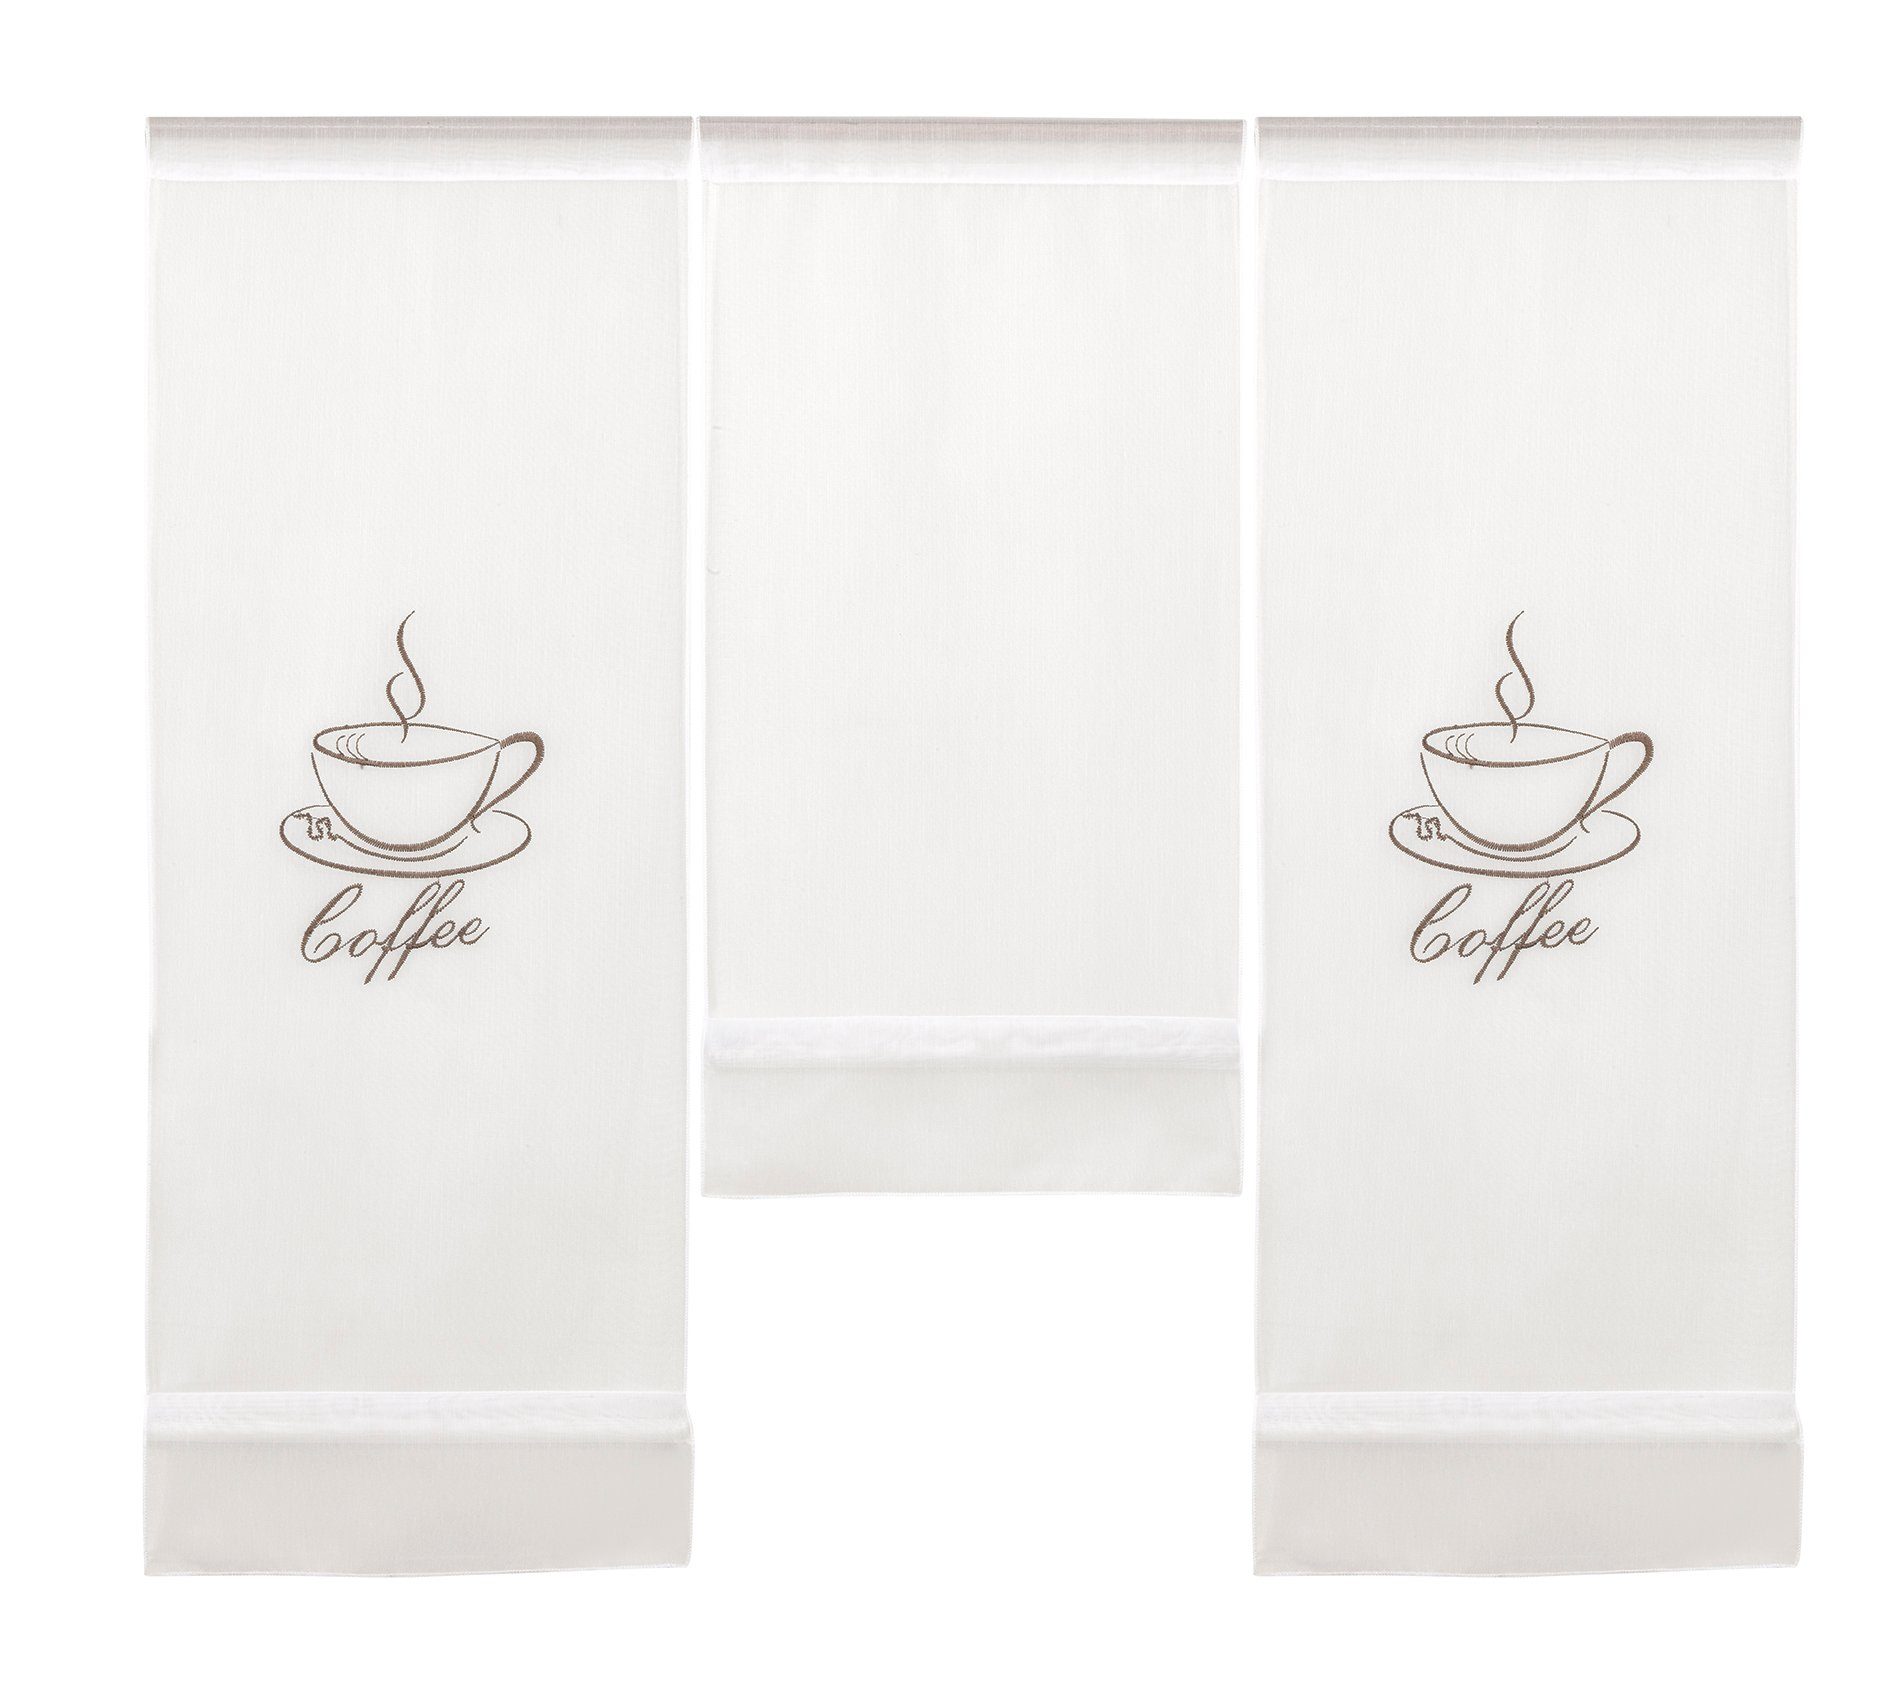 Scheibengardine Design Mini Flächenvorhang Kaffee Coffee Set weiß 4057-01, bestickt (3 Stangendurchzug St), braun bestickt, Kaffeemotiv, transparent, weiß Clever-Kauf-24, transparent